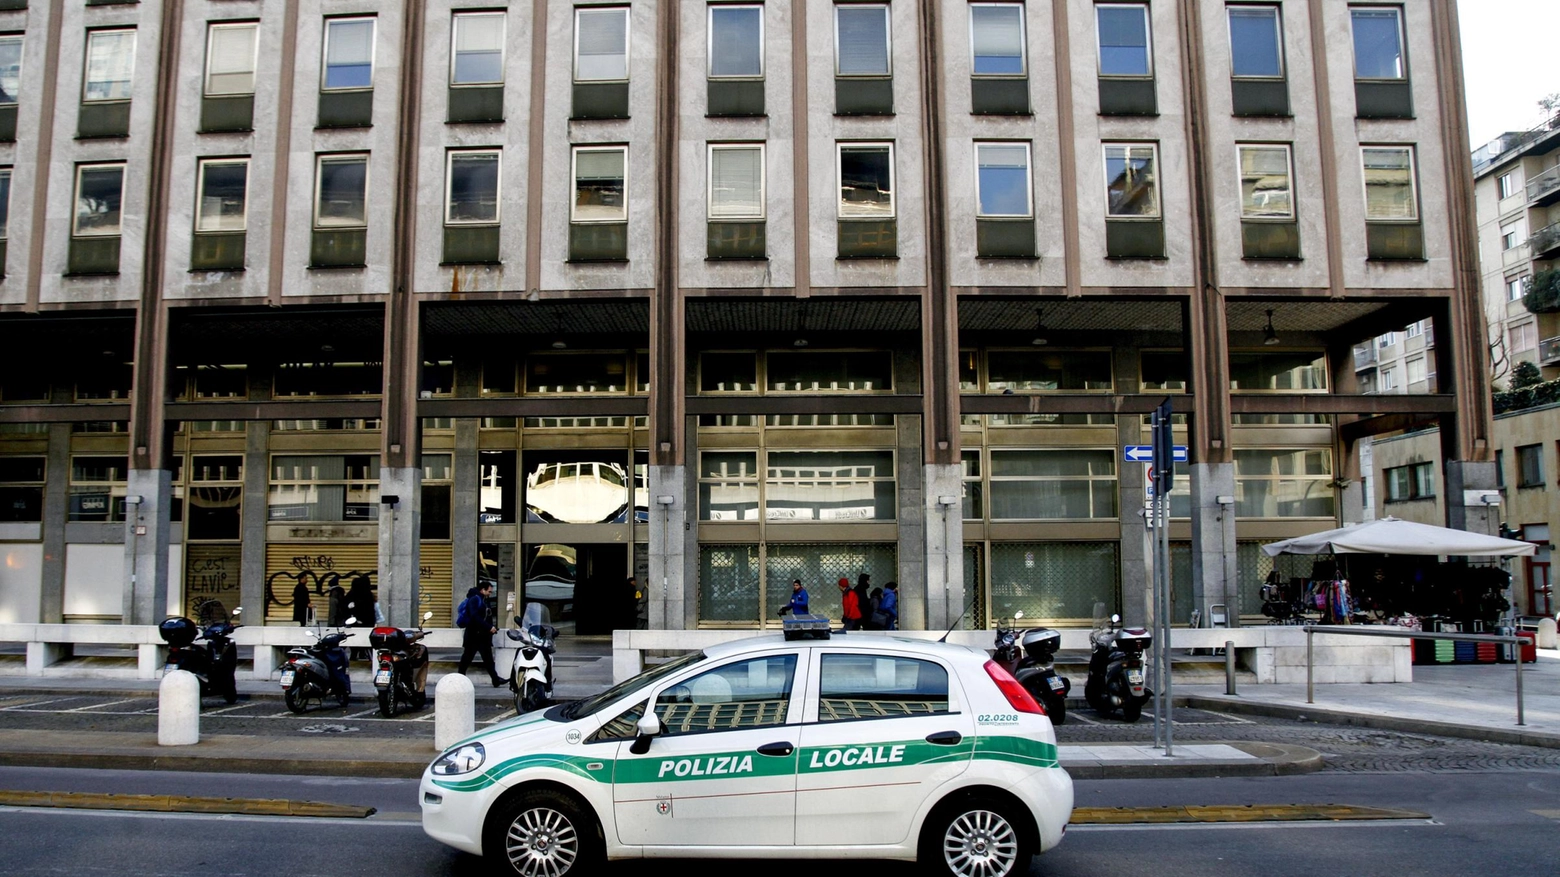 Un clochard è stato trovato senza vita in zona Stazione Centrale (La Presse)